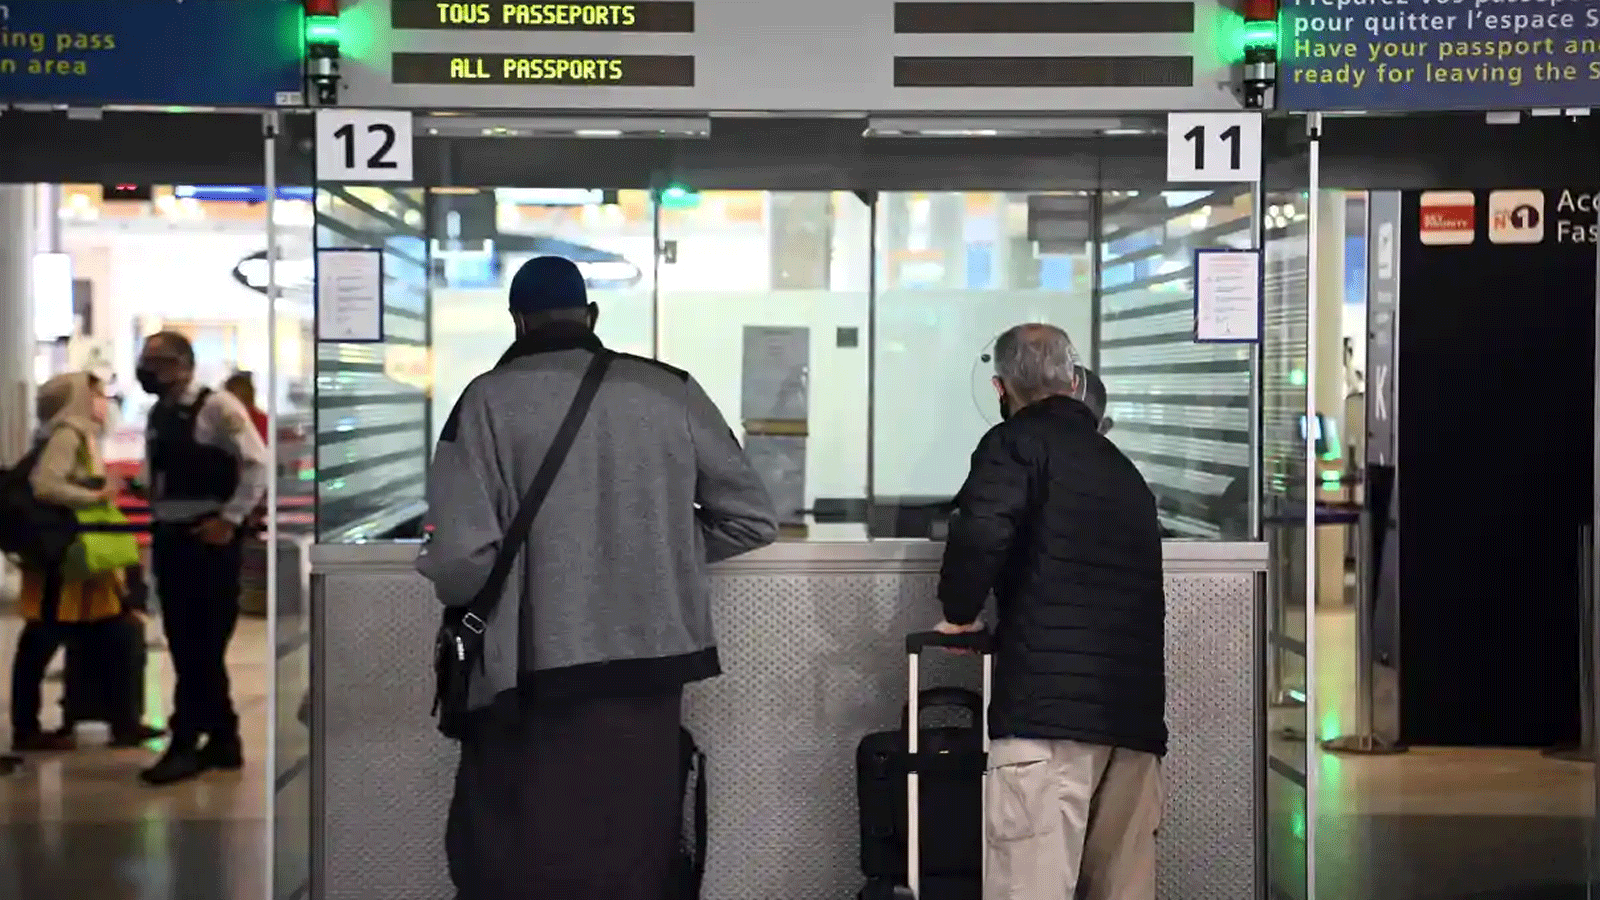  المسافرون يُظهرون وثائقهم في مطار شارل ديغول الدولي في 1 شباط\فبراير 2021.